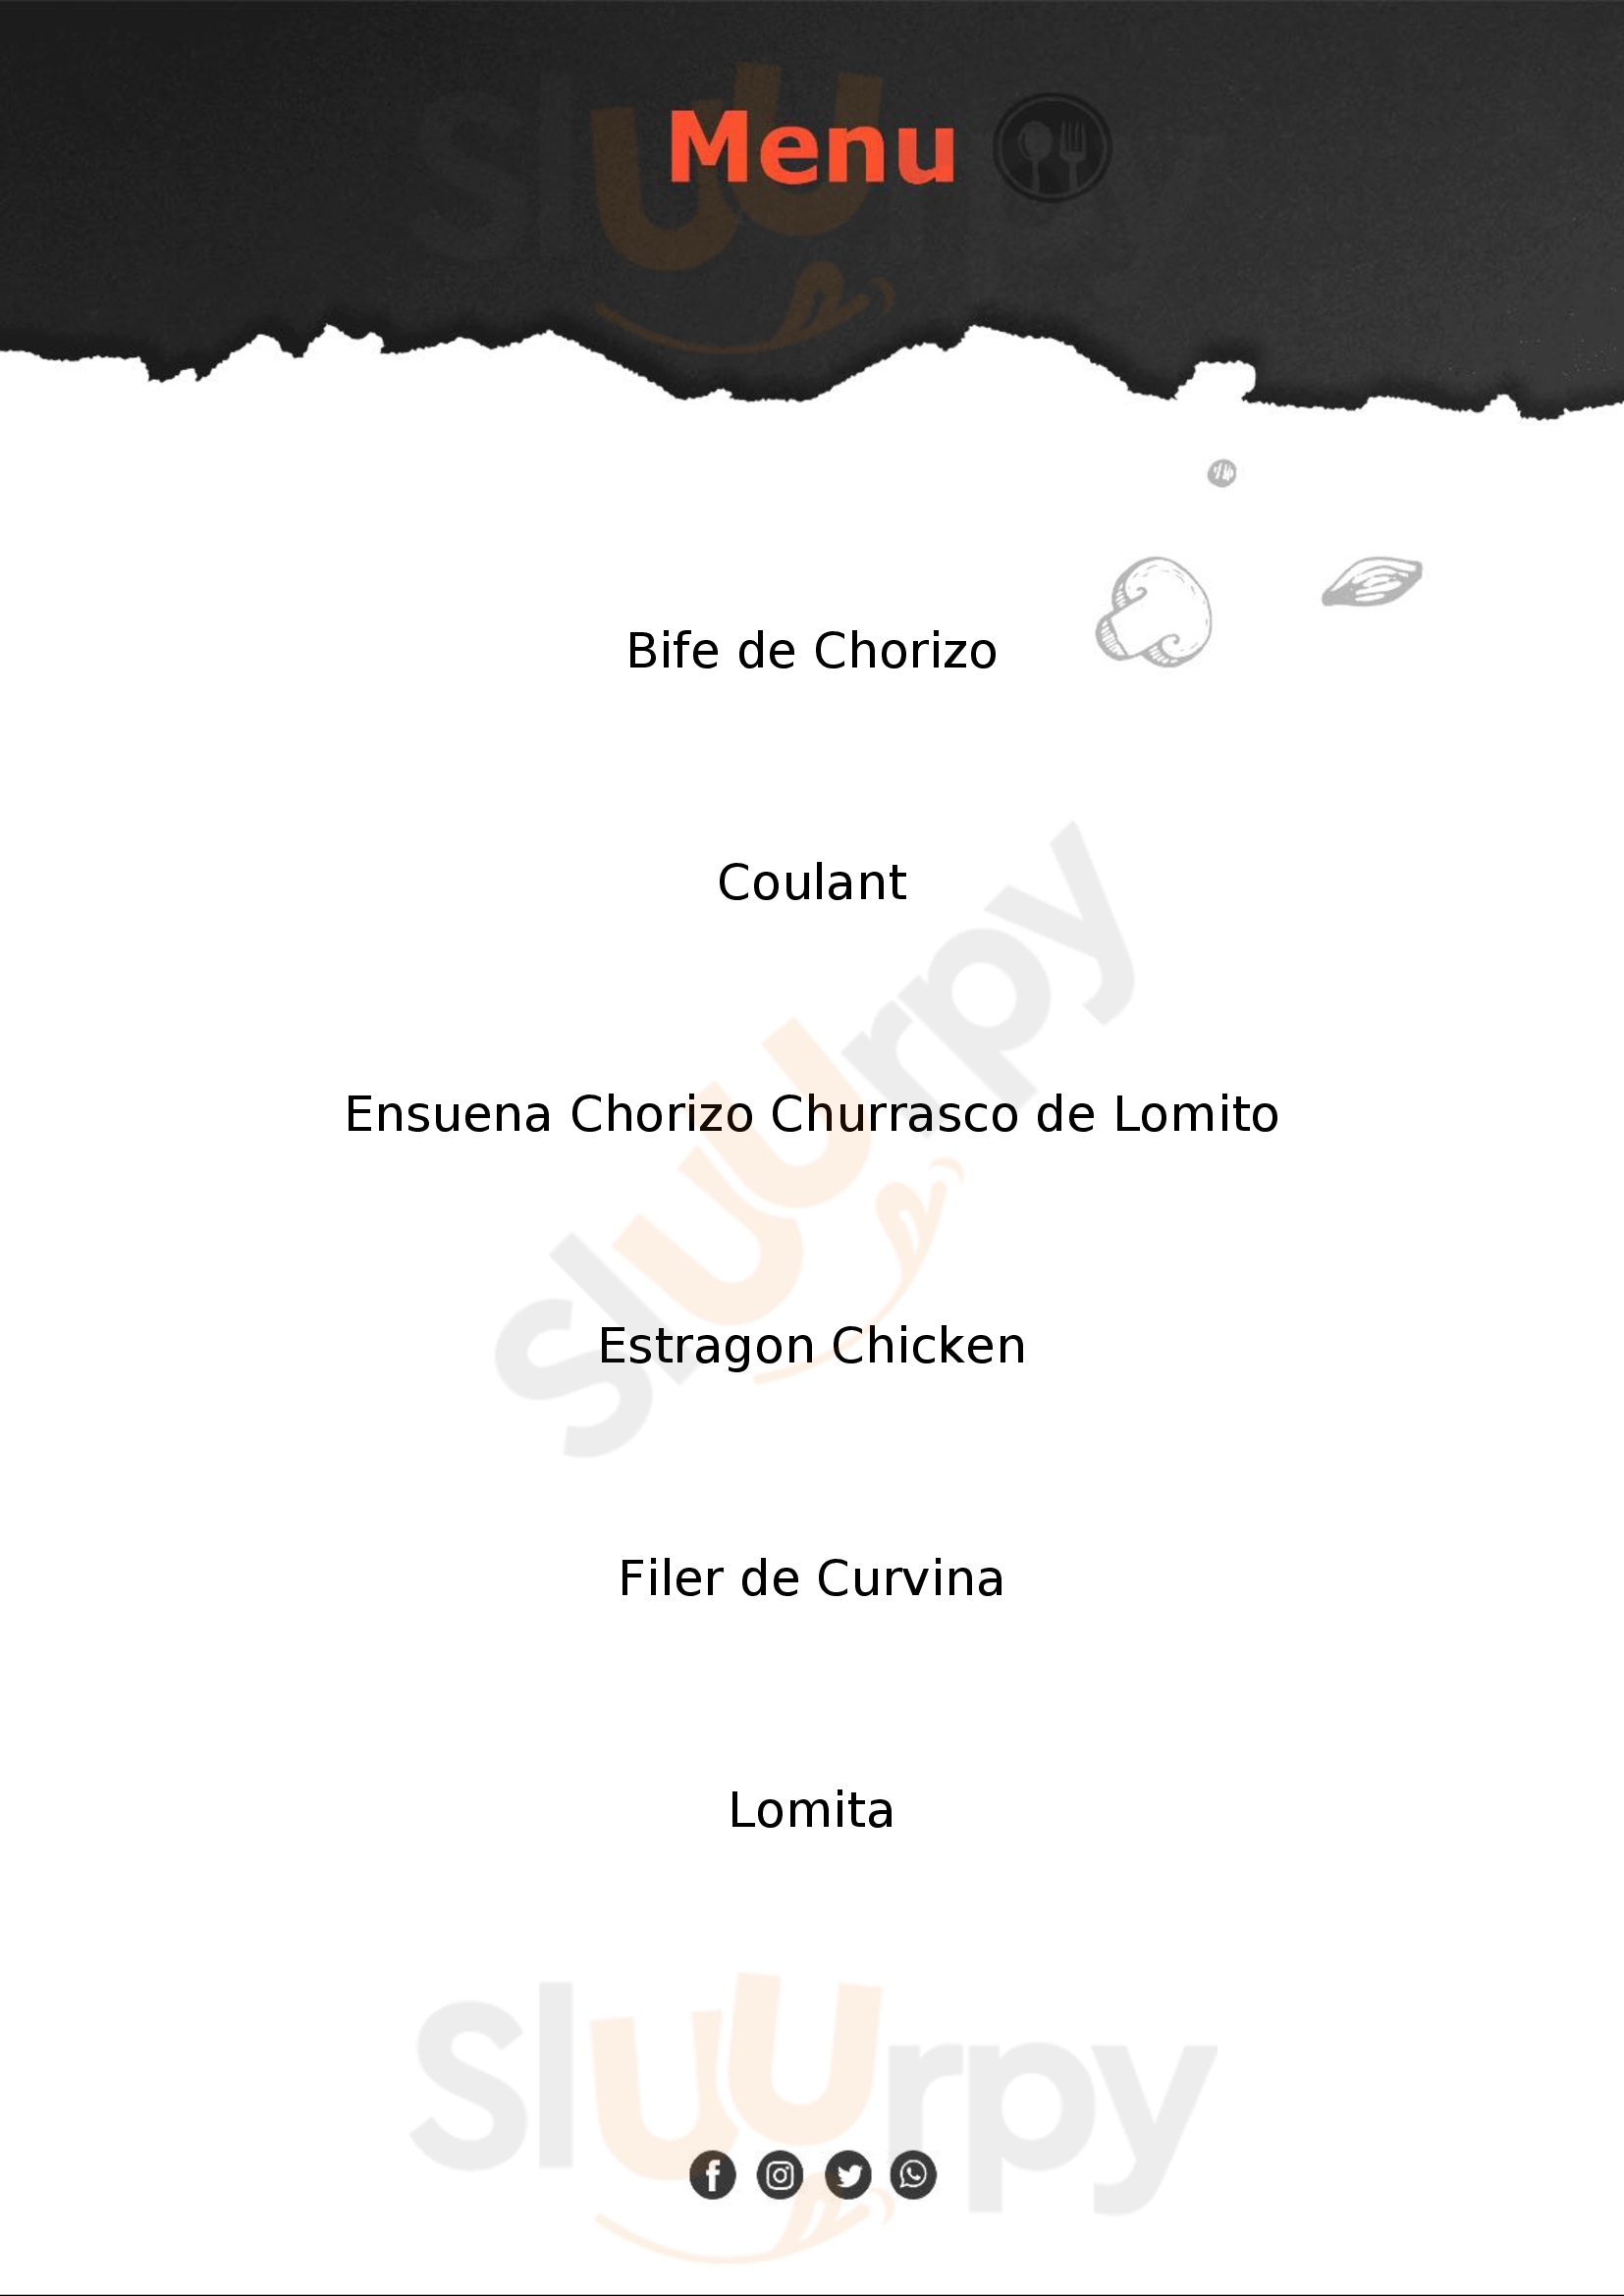 El Ensueno Restaurante Cartago Menu - 1